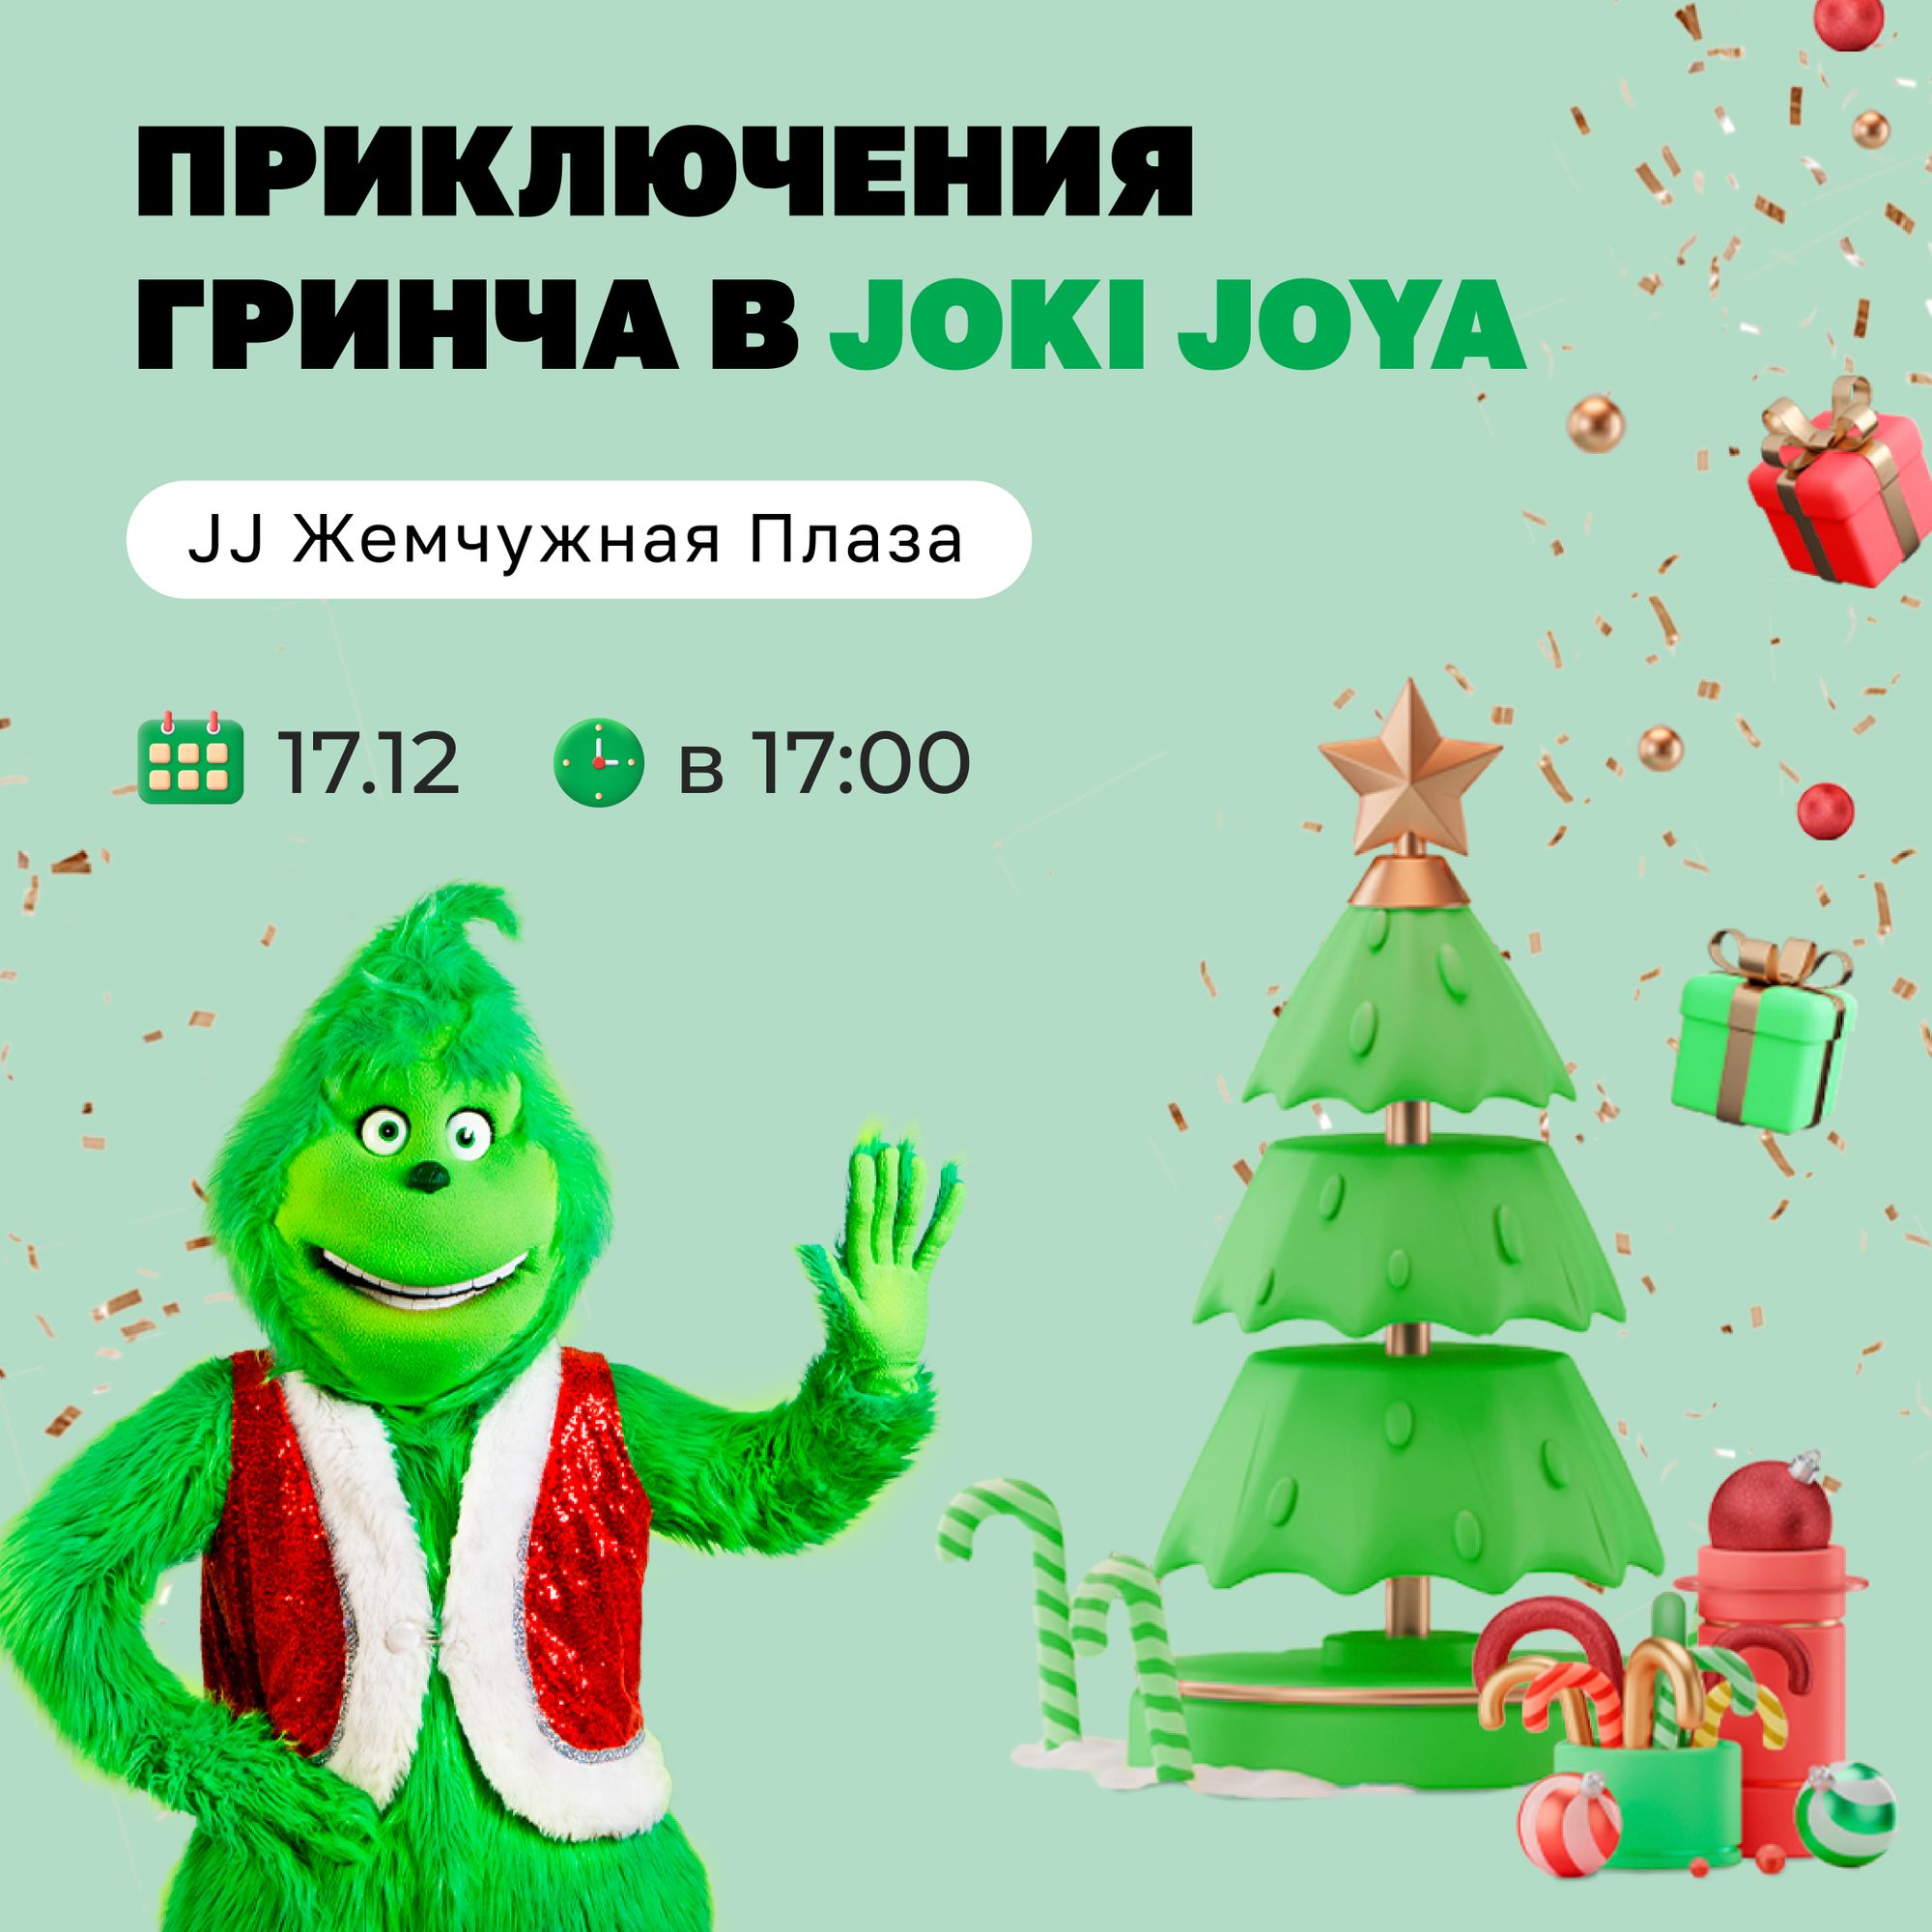 🌲 17 декабря — "Приключения Гринча в Joki Joya" в честь Дня Рождения парка JJ Жемчужная Плаза.